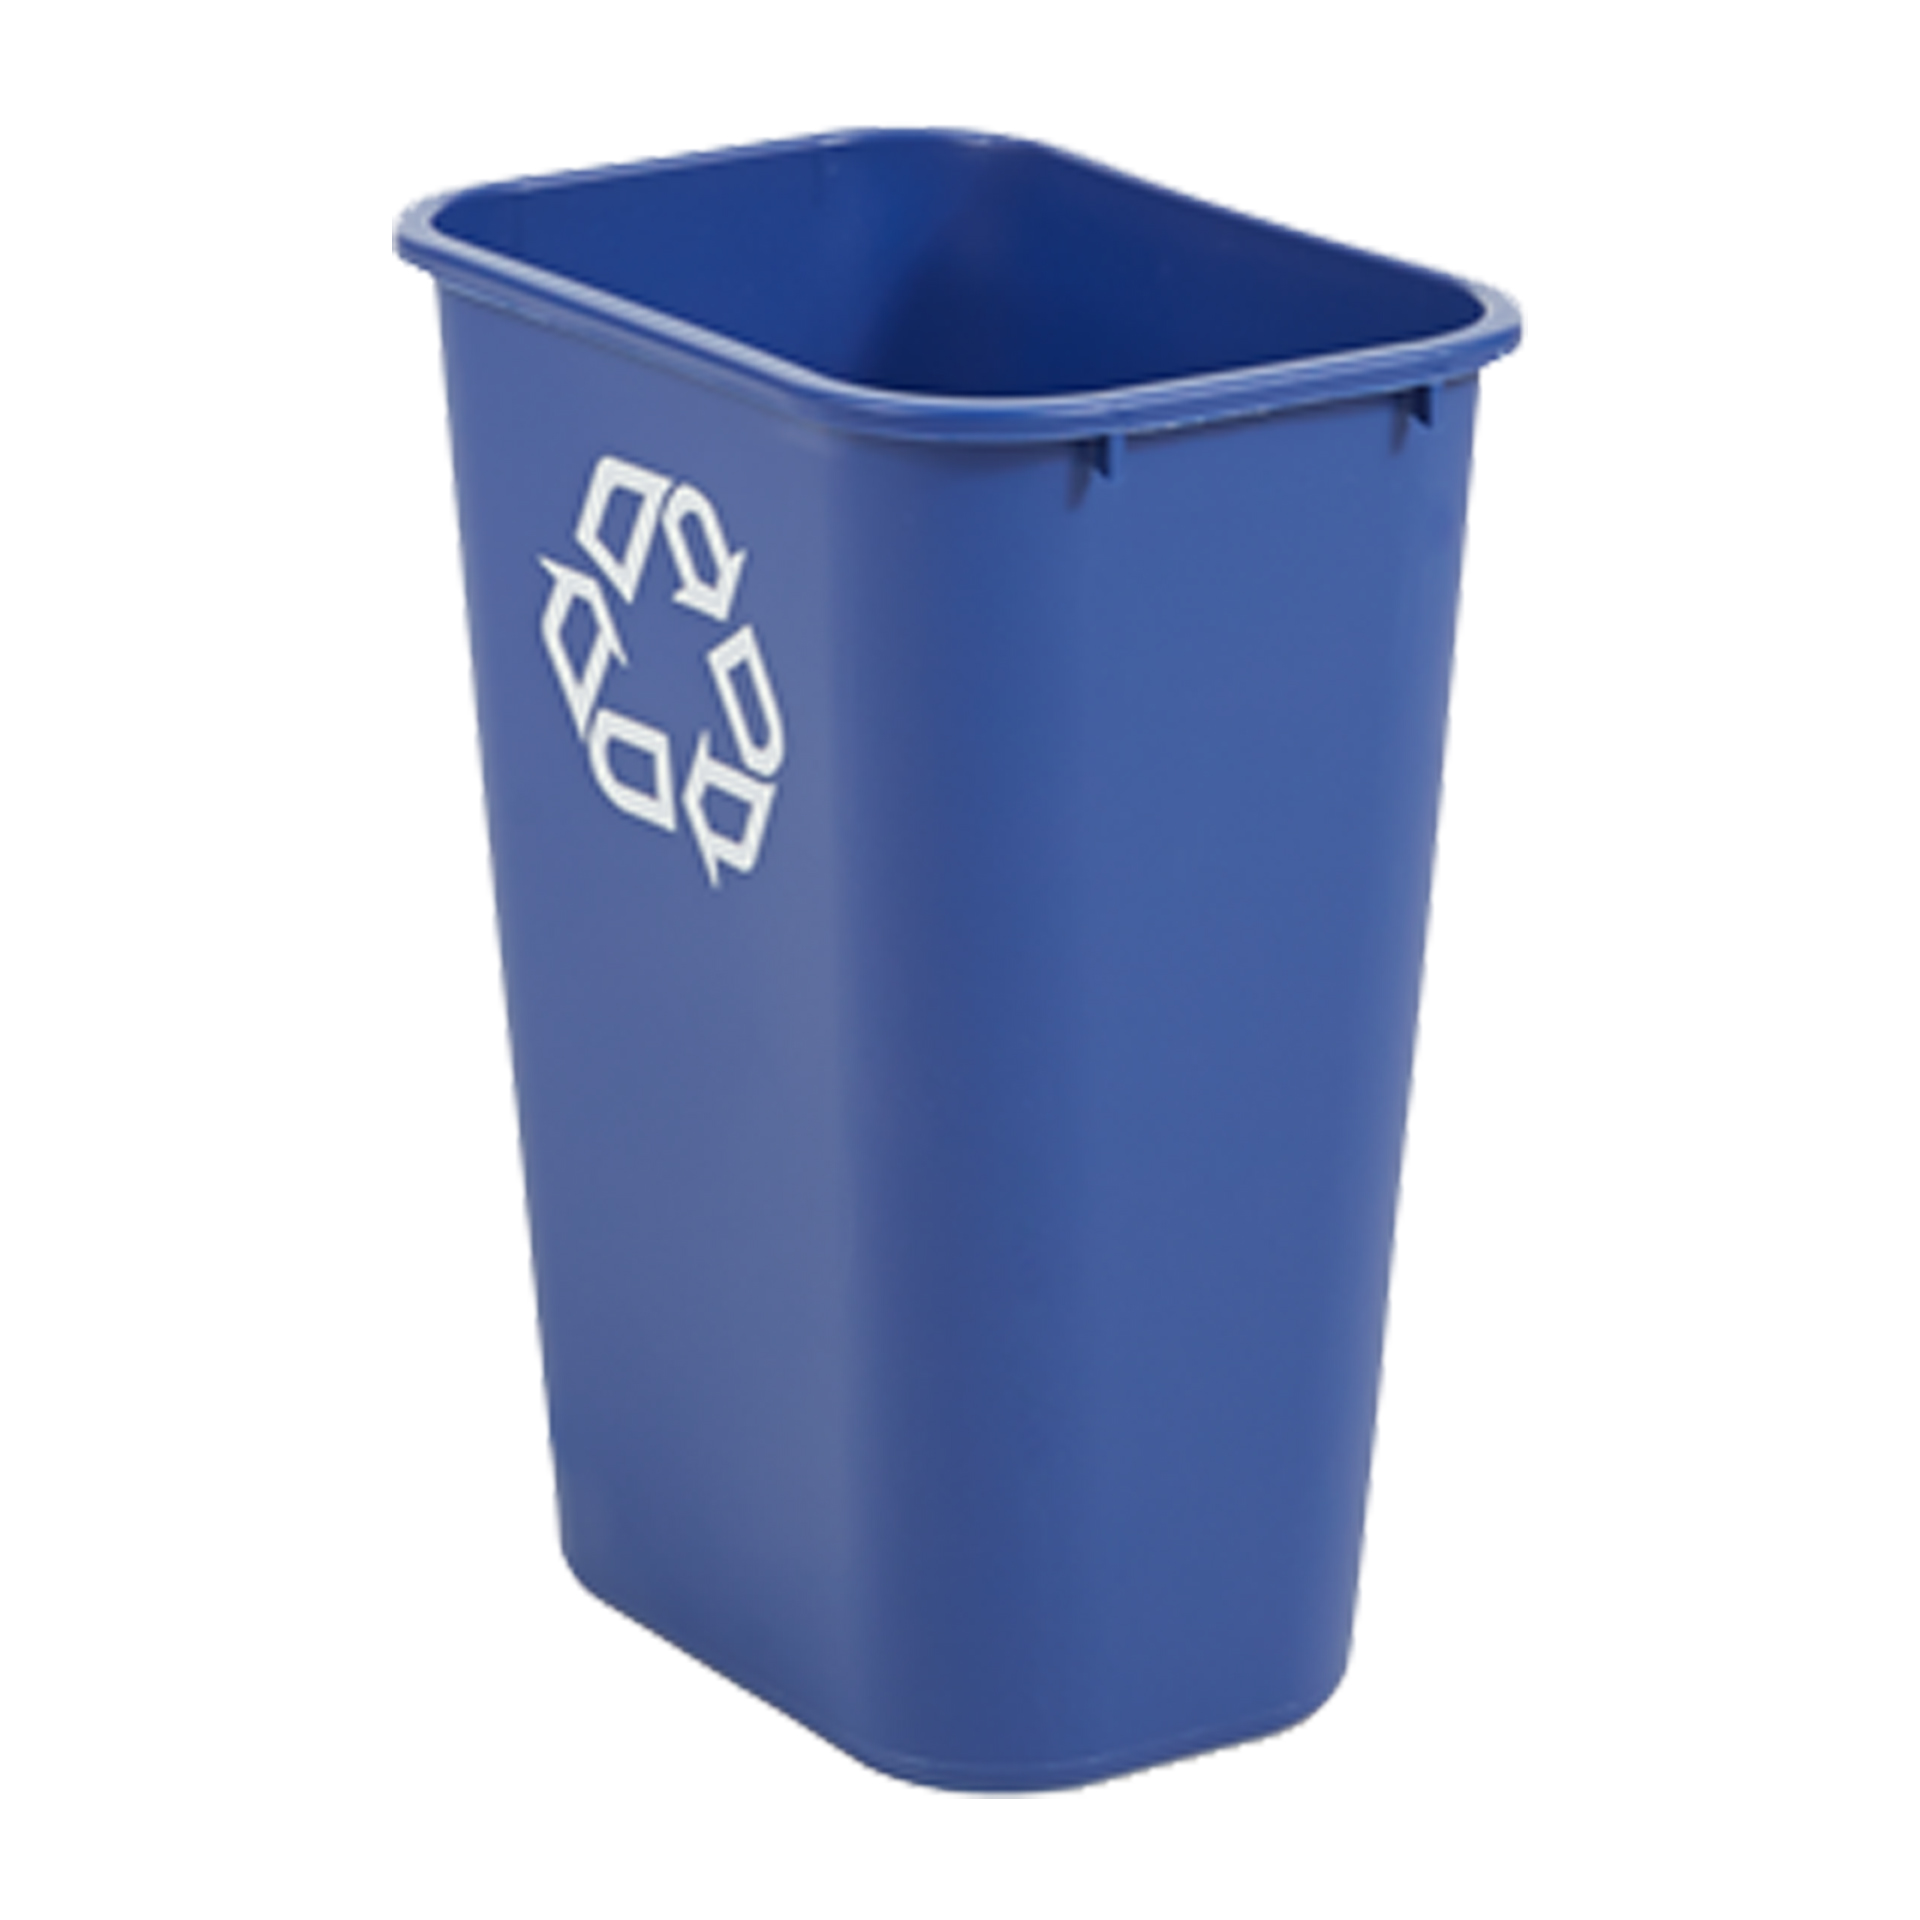 ถังขยะพลาสติก ขนาดใหญ่ 38.8 ลิตร สีน้ำเงิน